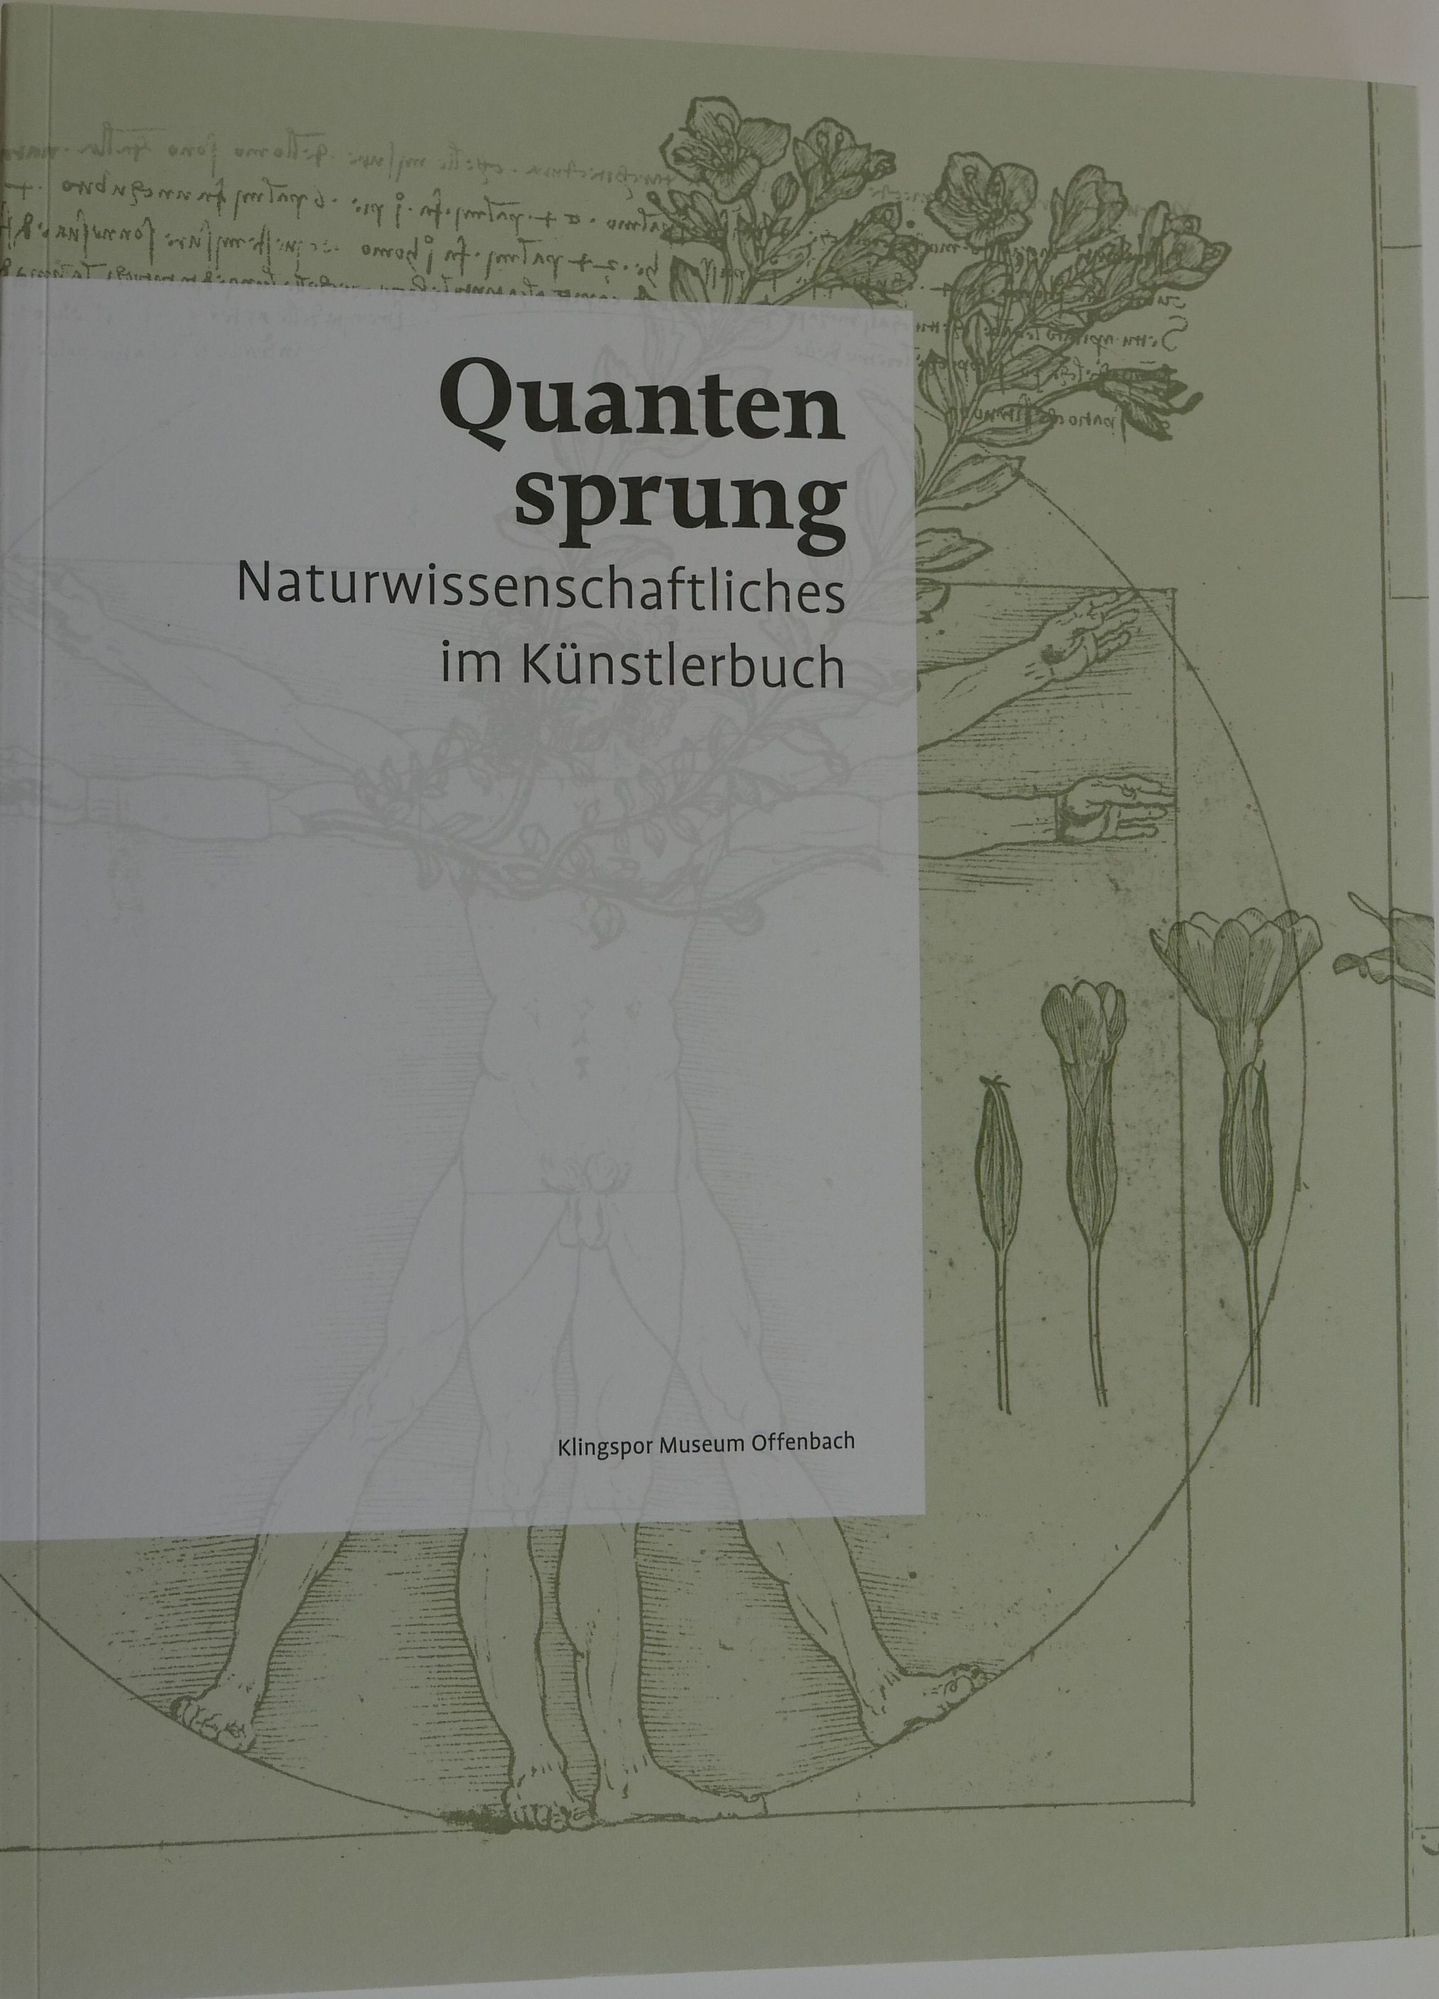 Naturwissenschaftliches im Künstlerbuch
Katalog zur gleichnamigen Ausstellung vom 16. März – 20. Juni 2018